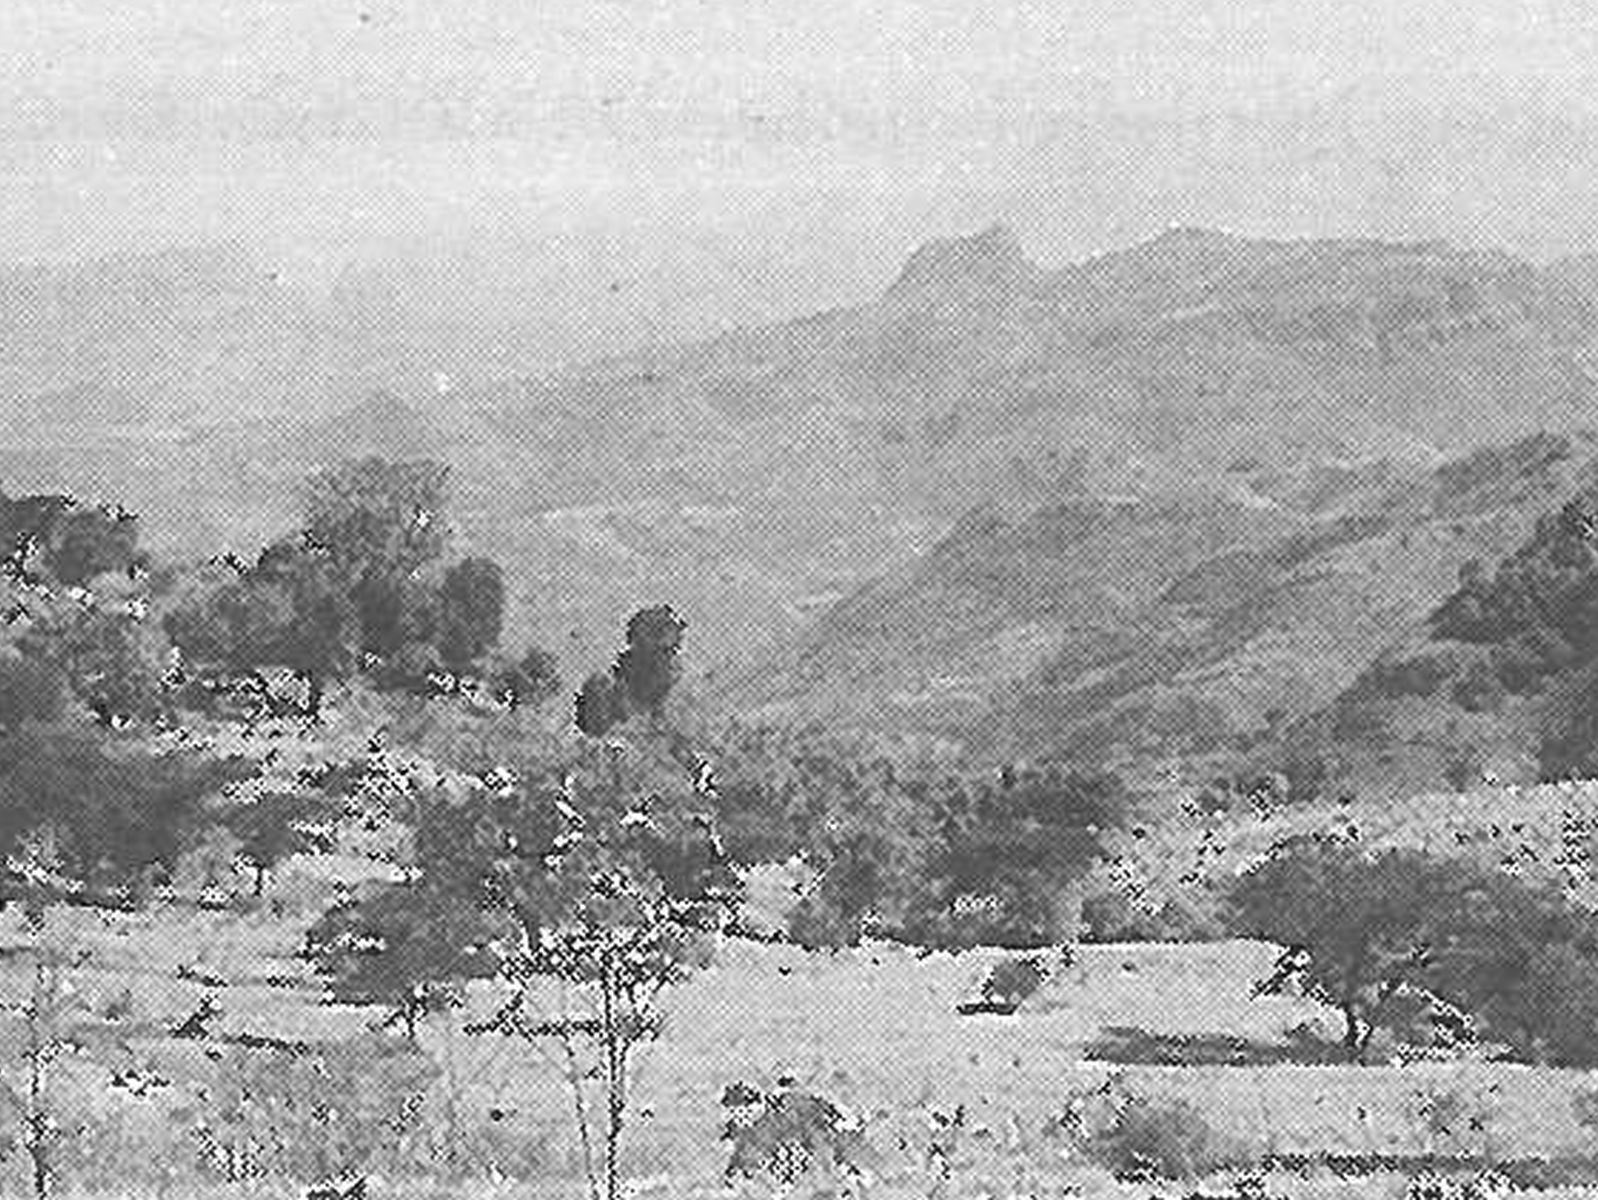  Schopflocher Skizzen Gebirgiger Norden Äthopiens - Bild wird mit einem Klick vergrößert 